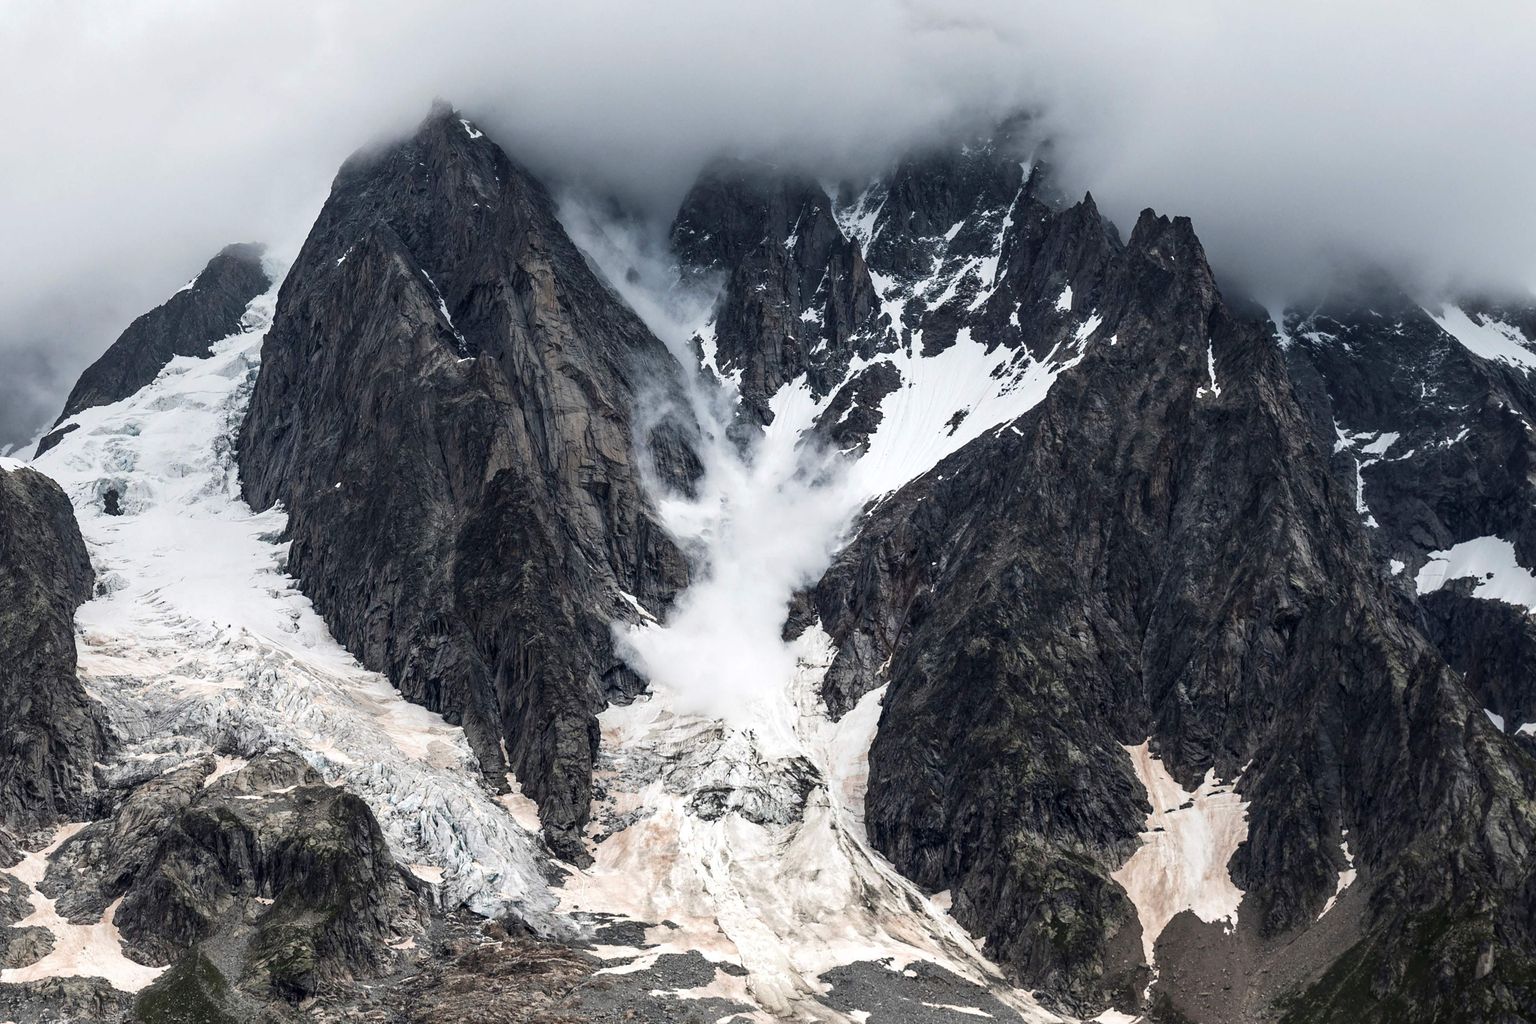 Euroopa kõrgeima tipu Mont Blanci Grand Jorasses liustik. Prantsuse linnapea plaanib hakata võtma Mont Blacile ronijatelt ettemaksuna 15 000 eurut, mis kataks päästmis- ja hukkumiskulud